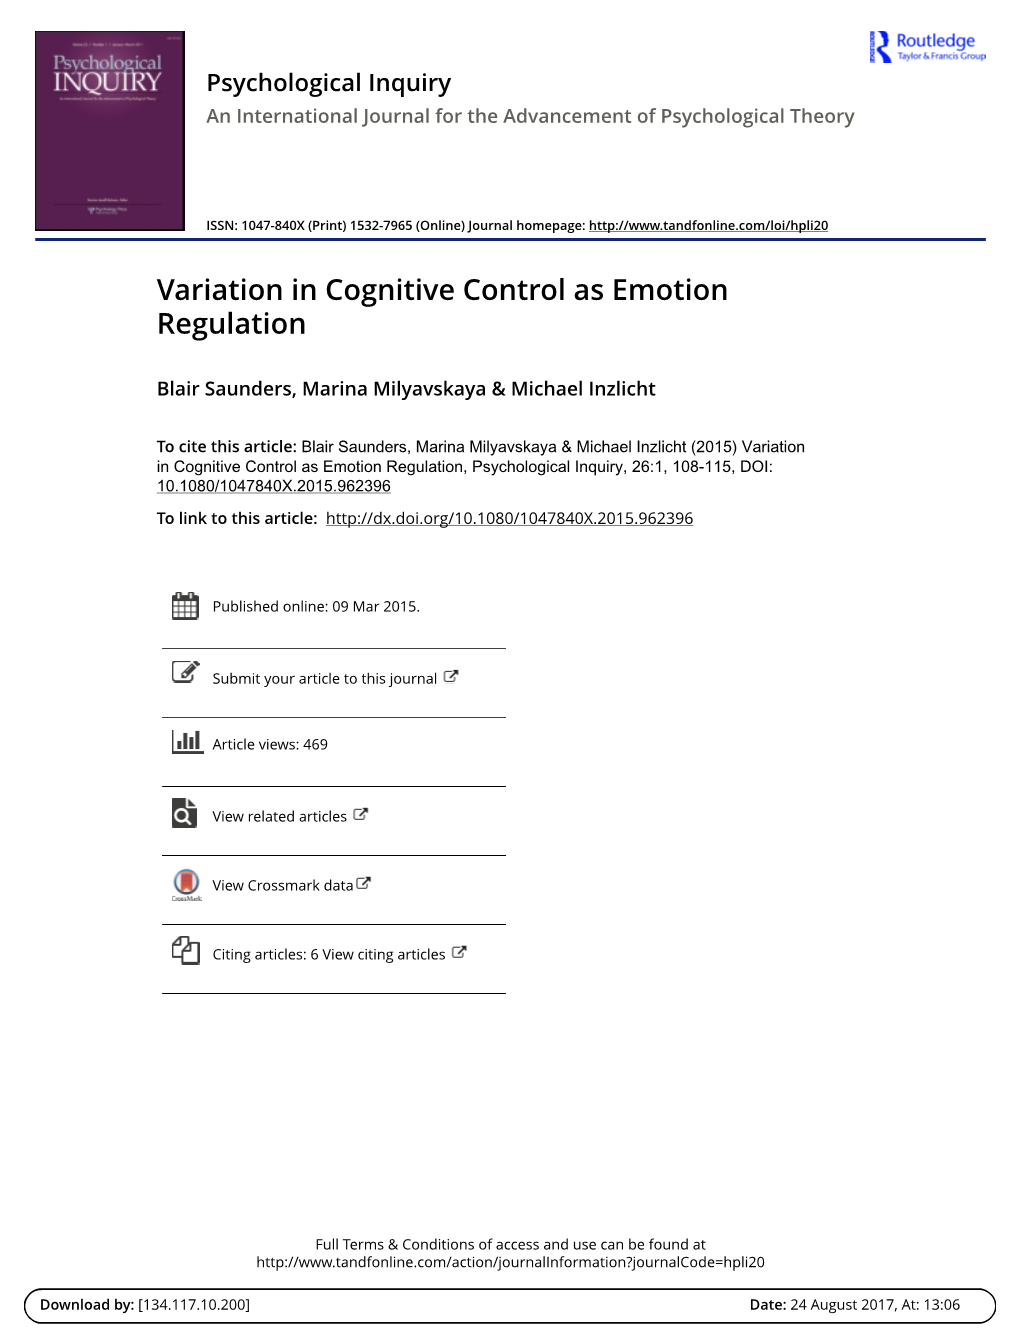 Variation in Cognitive Control As Emotion Regulation